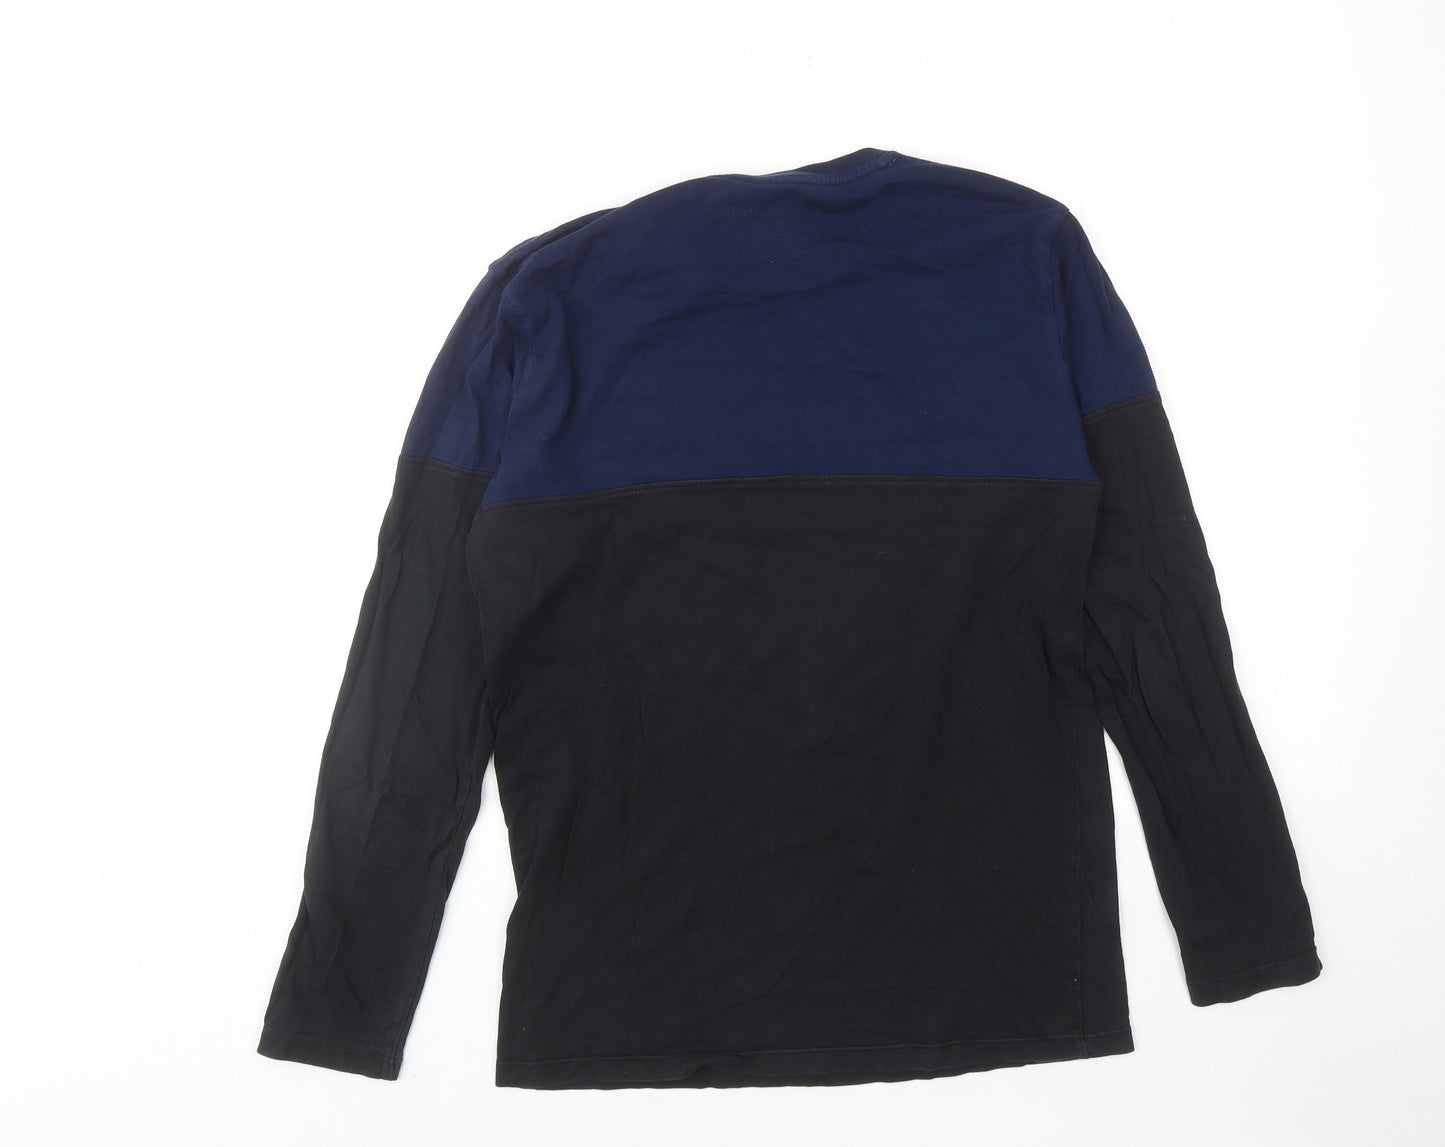 Teefit Fashion Mens Black Colourblock Cotton T-Shirt Size M Round Neck